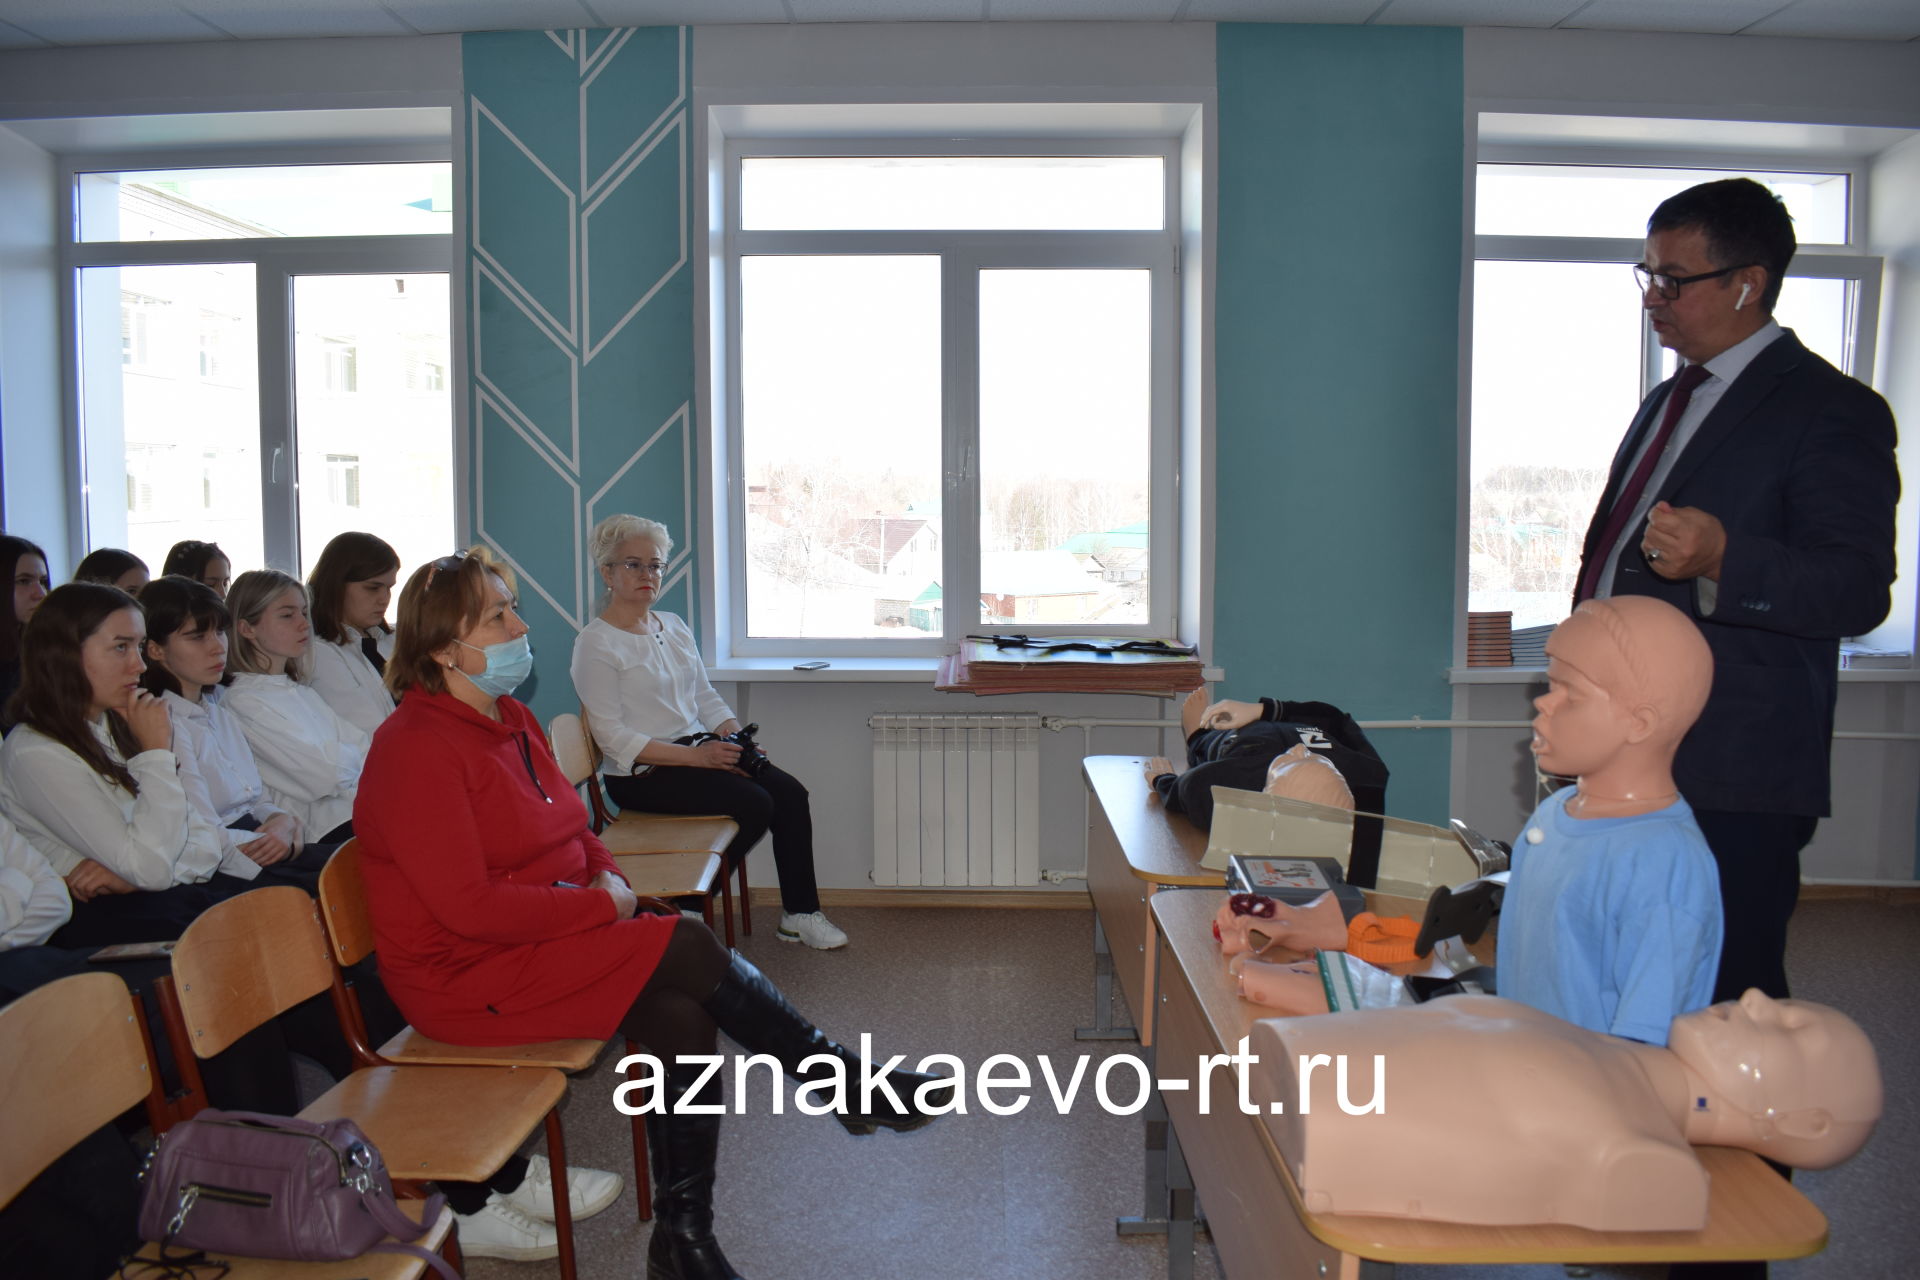 Активисты ТОС №6 организовали познавательную встречу с врачом для учащихся гимназии